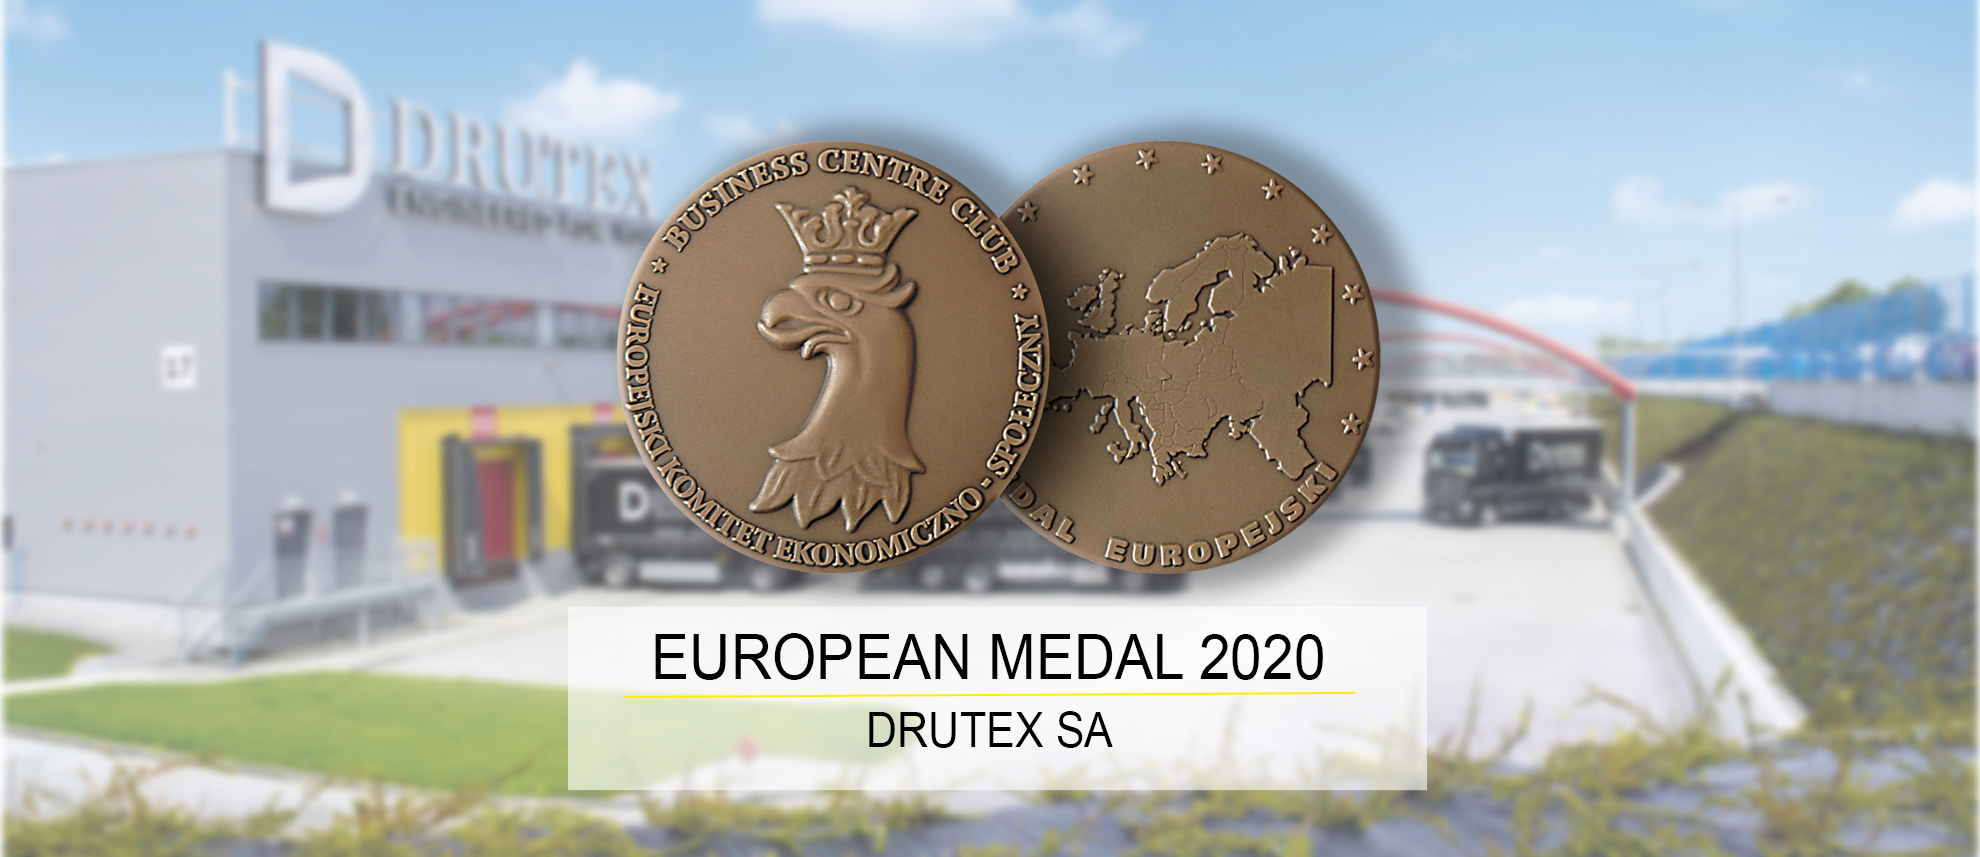 Drutex mit Europäischer Medaille ausgezeichnet